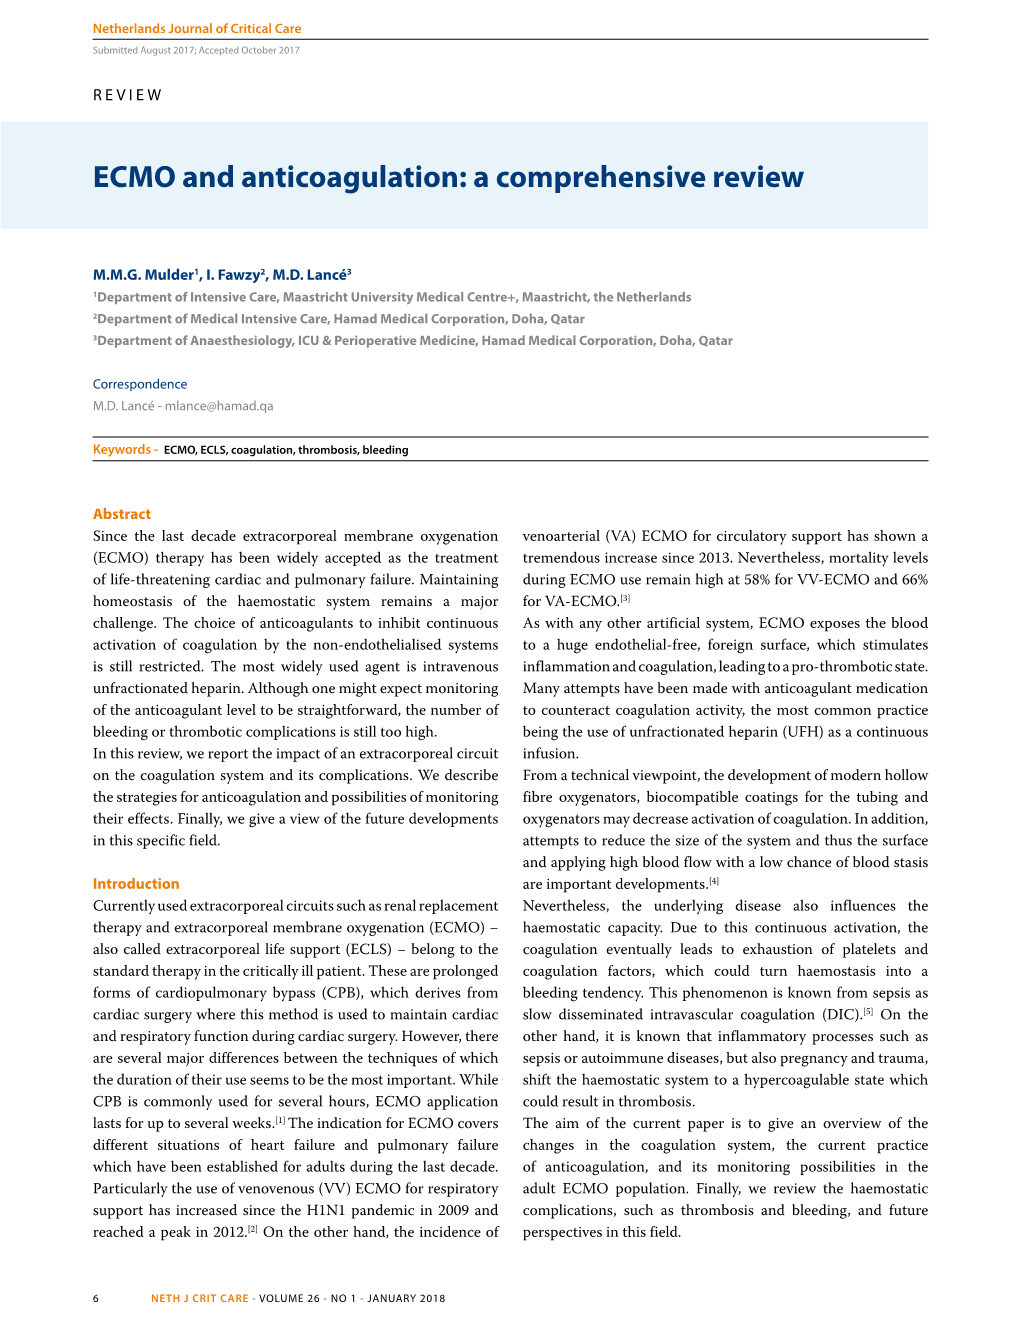 ECMO and Anticoagulation: a Comprehensive Review